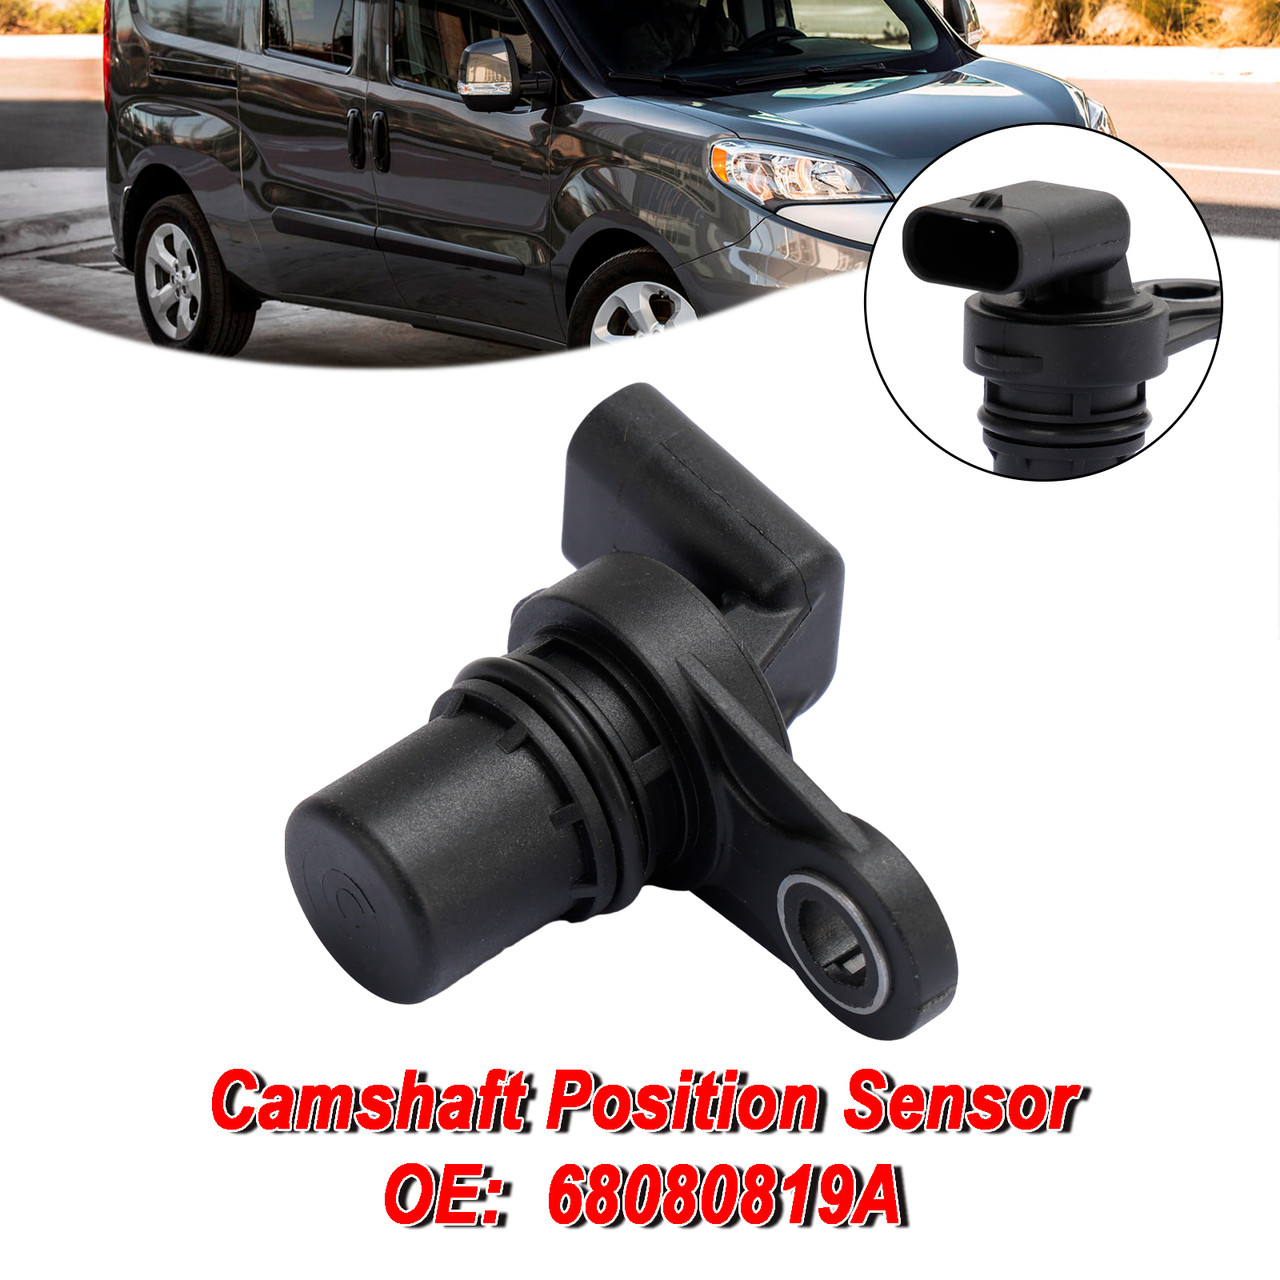 Camshaft Position Sensor 68080819A for Chrysler Dodge Jeep 2007-2020